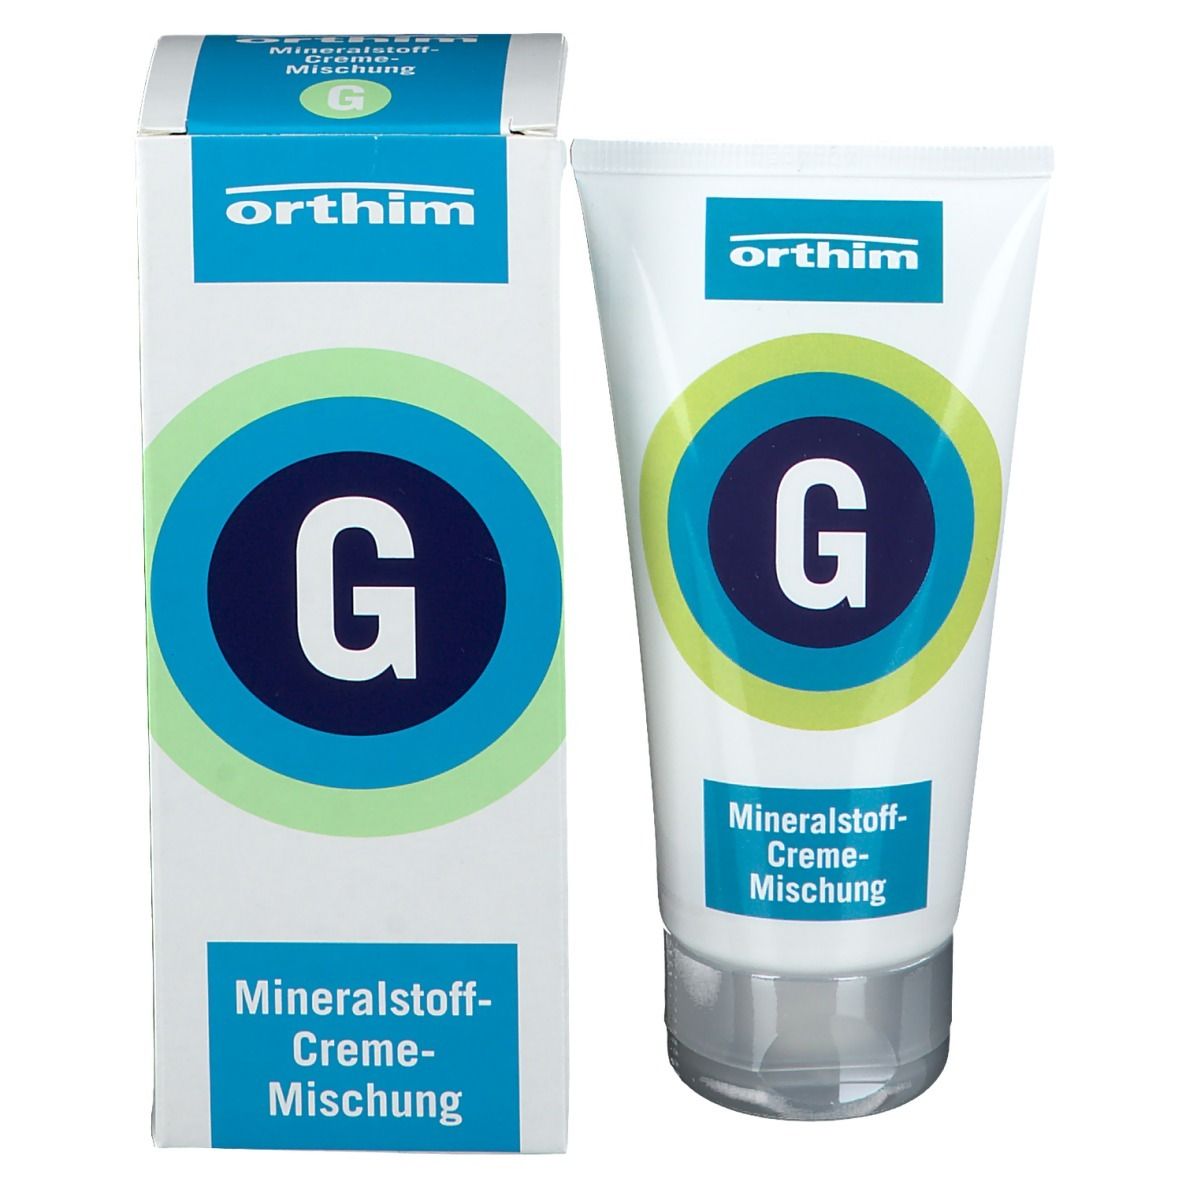 Mineralstoff-Creme-Mischung G